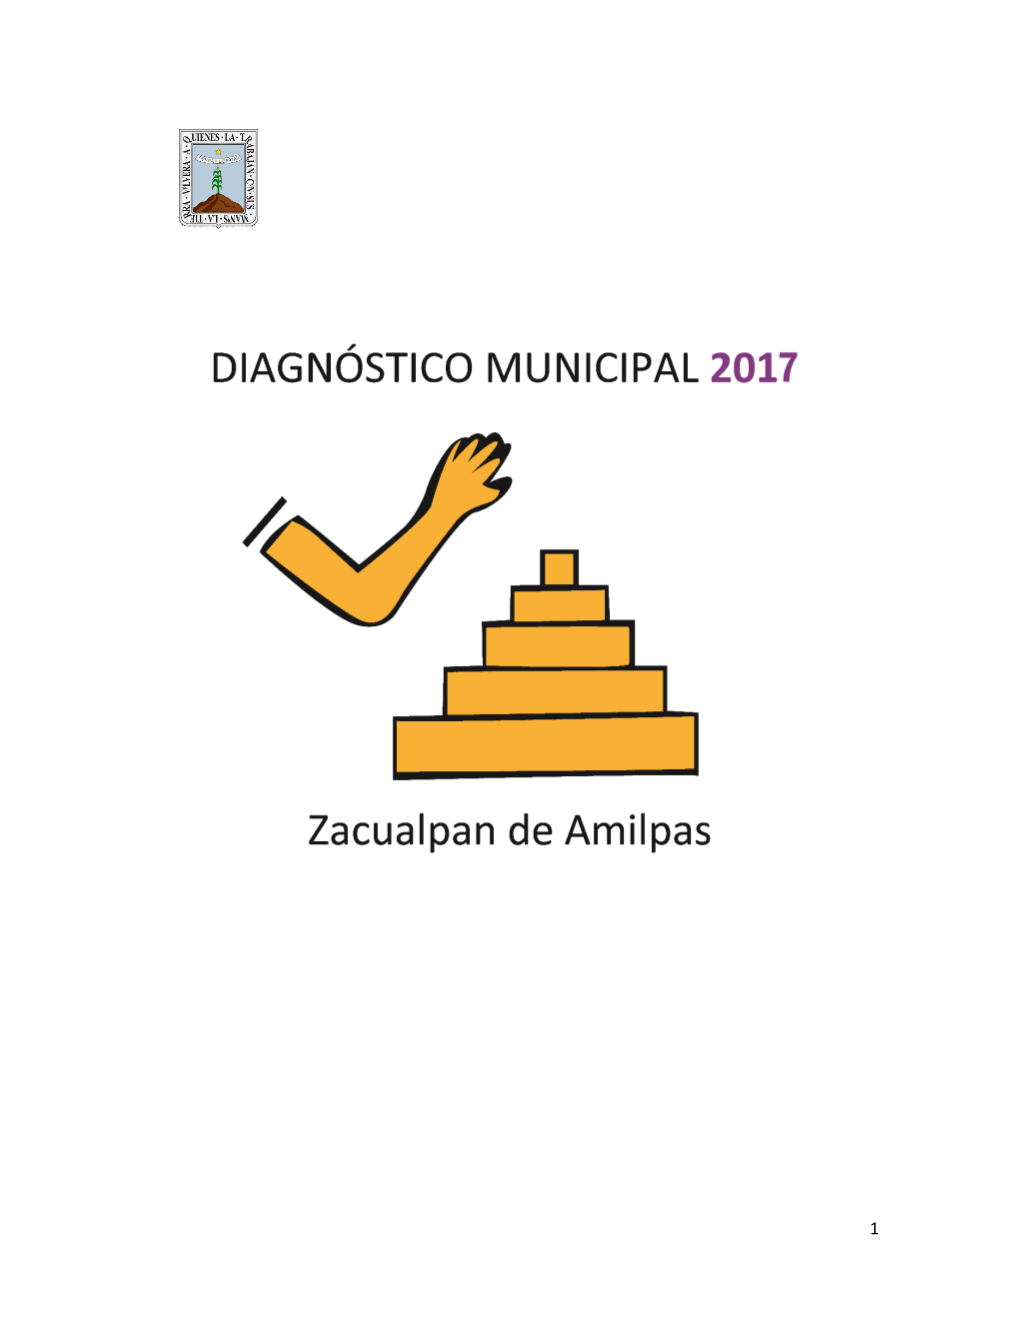 Zacualpan De Amilpas